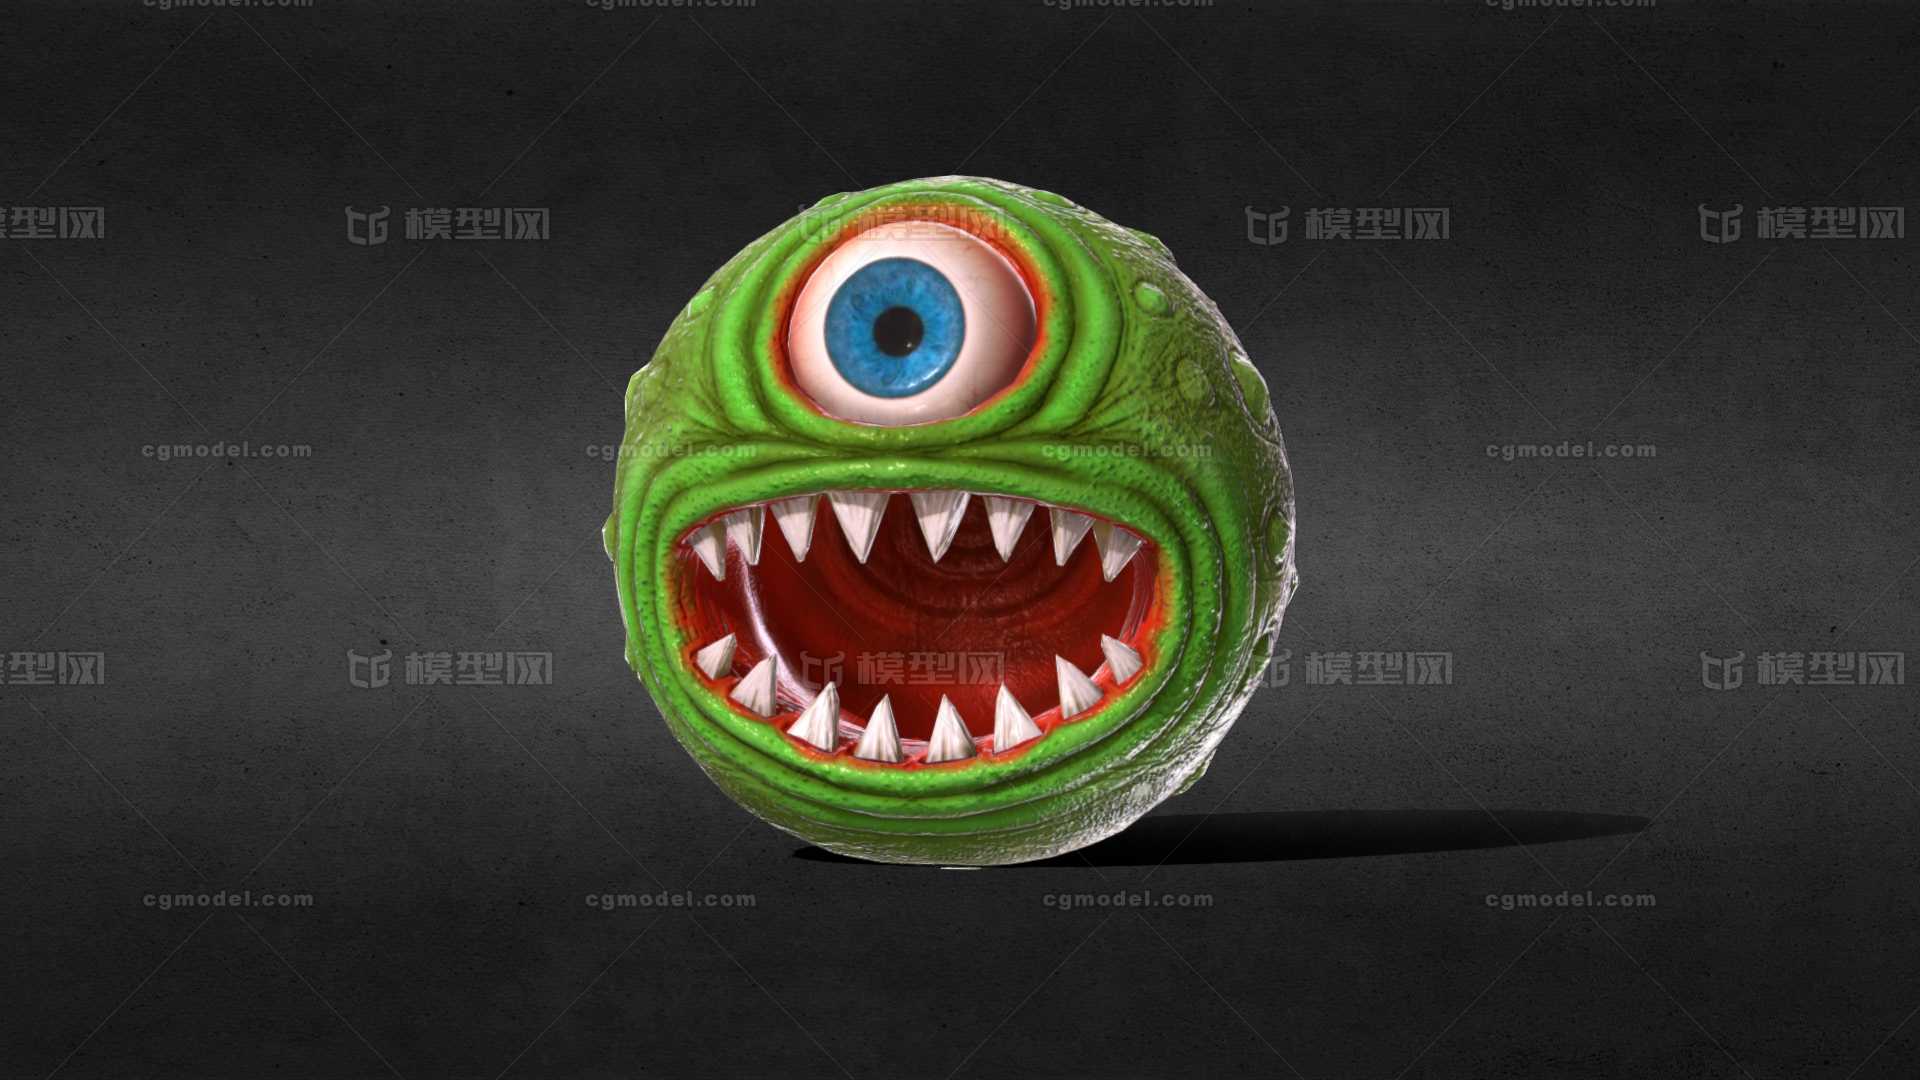 独眼怪 怪物 小妖怪 外星生物 异形 圆球生物 生物怪-cg模型免费下载-CG99